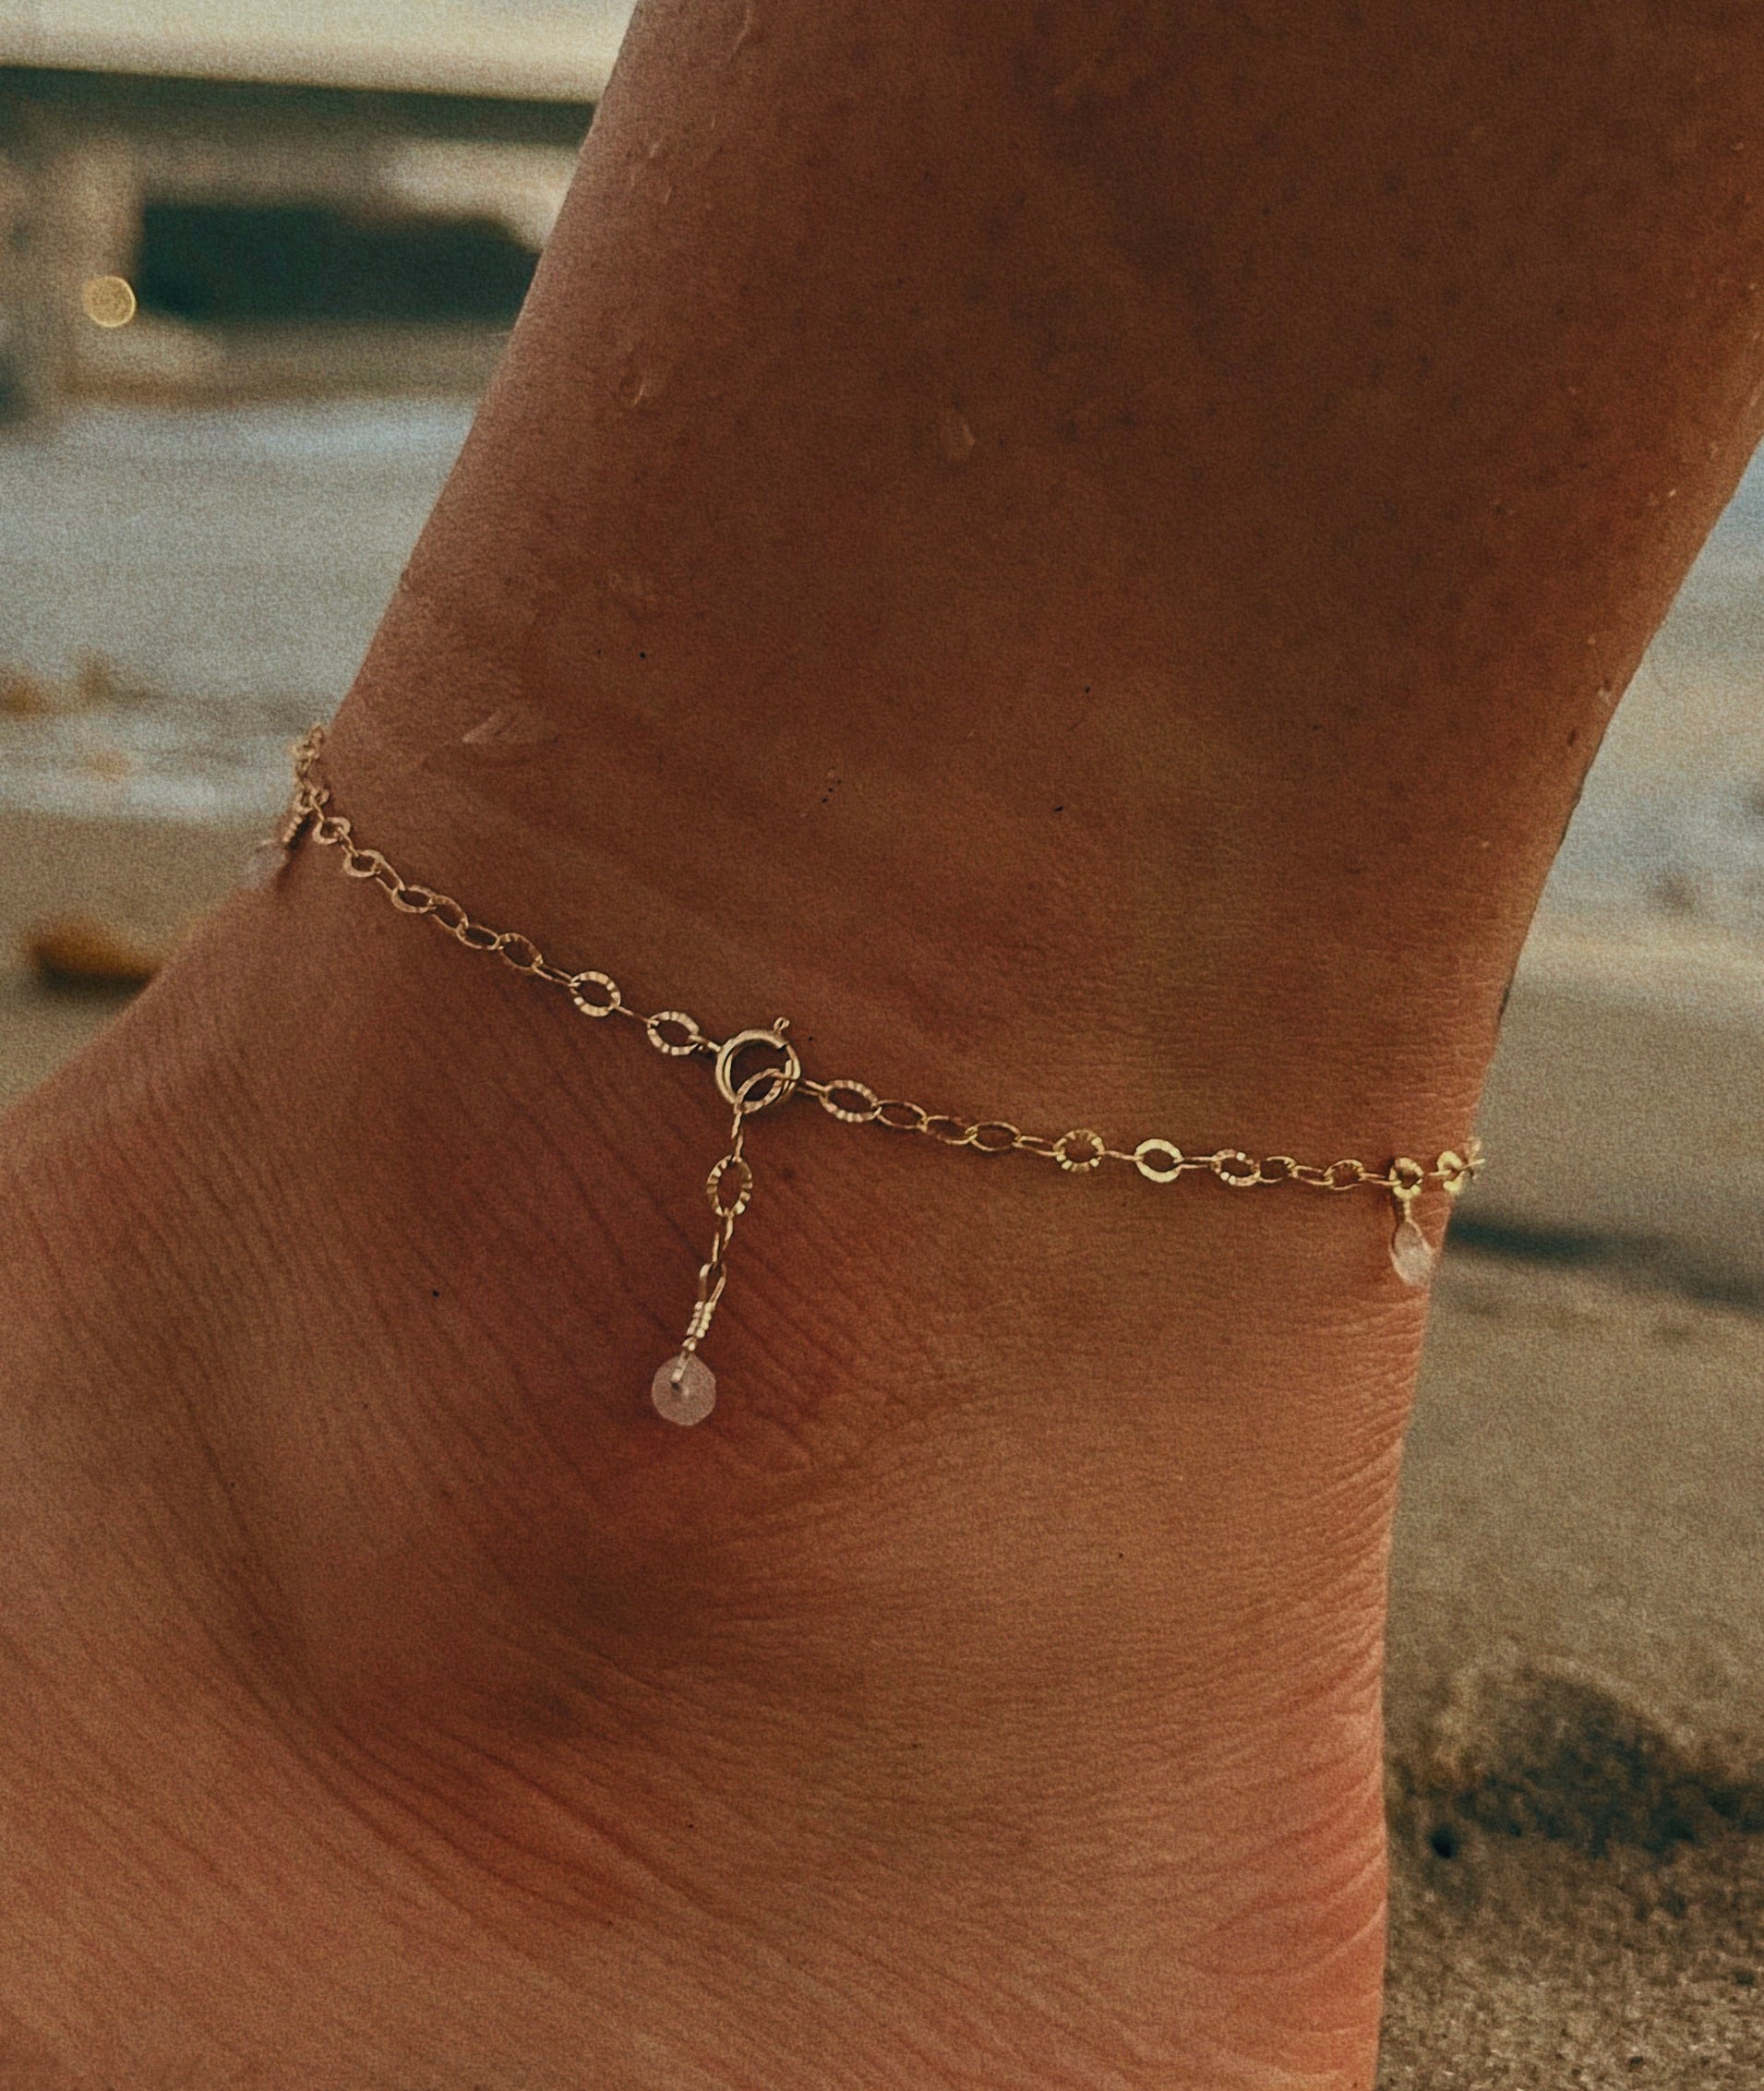 Gemstone Anklets - Kindness Gems LLC